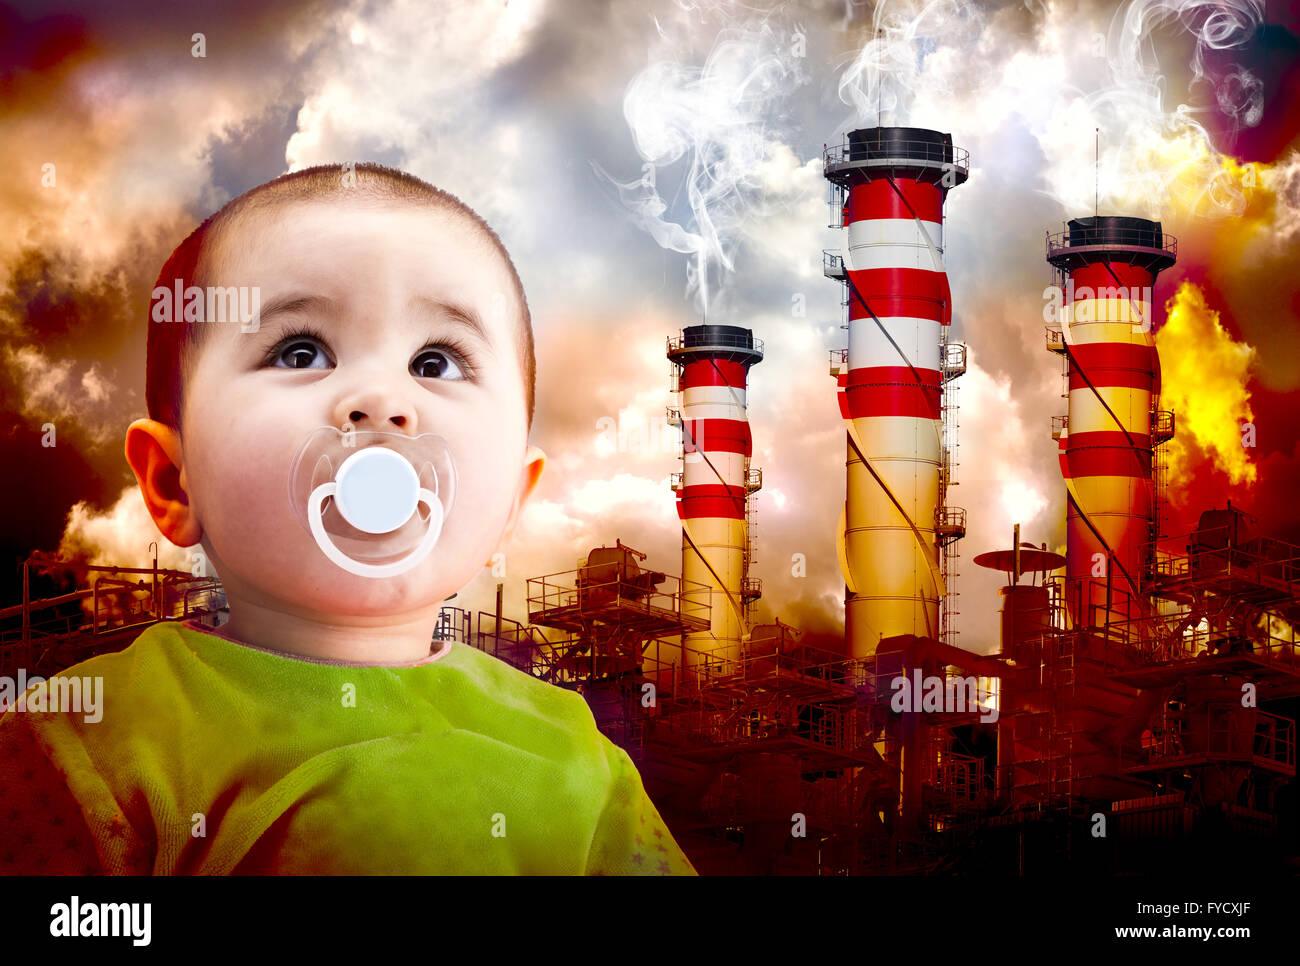 Влияние окружающей среды на ребенка. Плохая экология. Детям об экологии. Заболевания из за загрязнения воздуха. Окружающая среда ребенка.